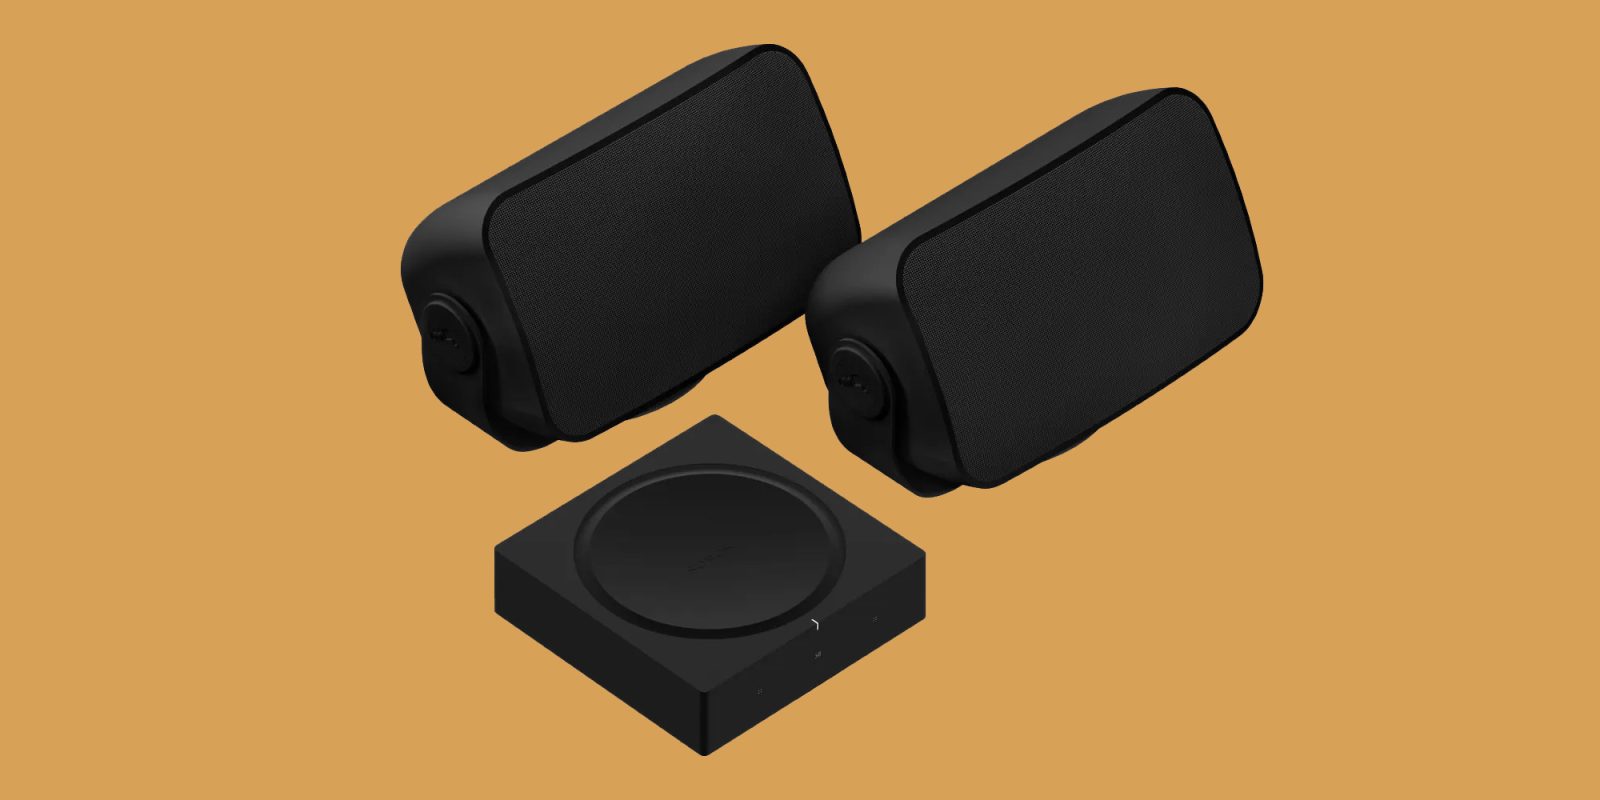 Sonos outdoor speakers in black